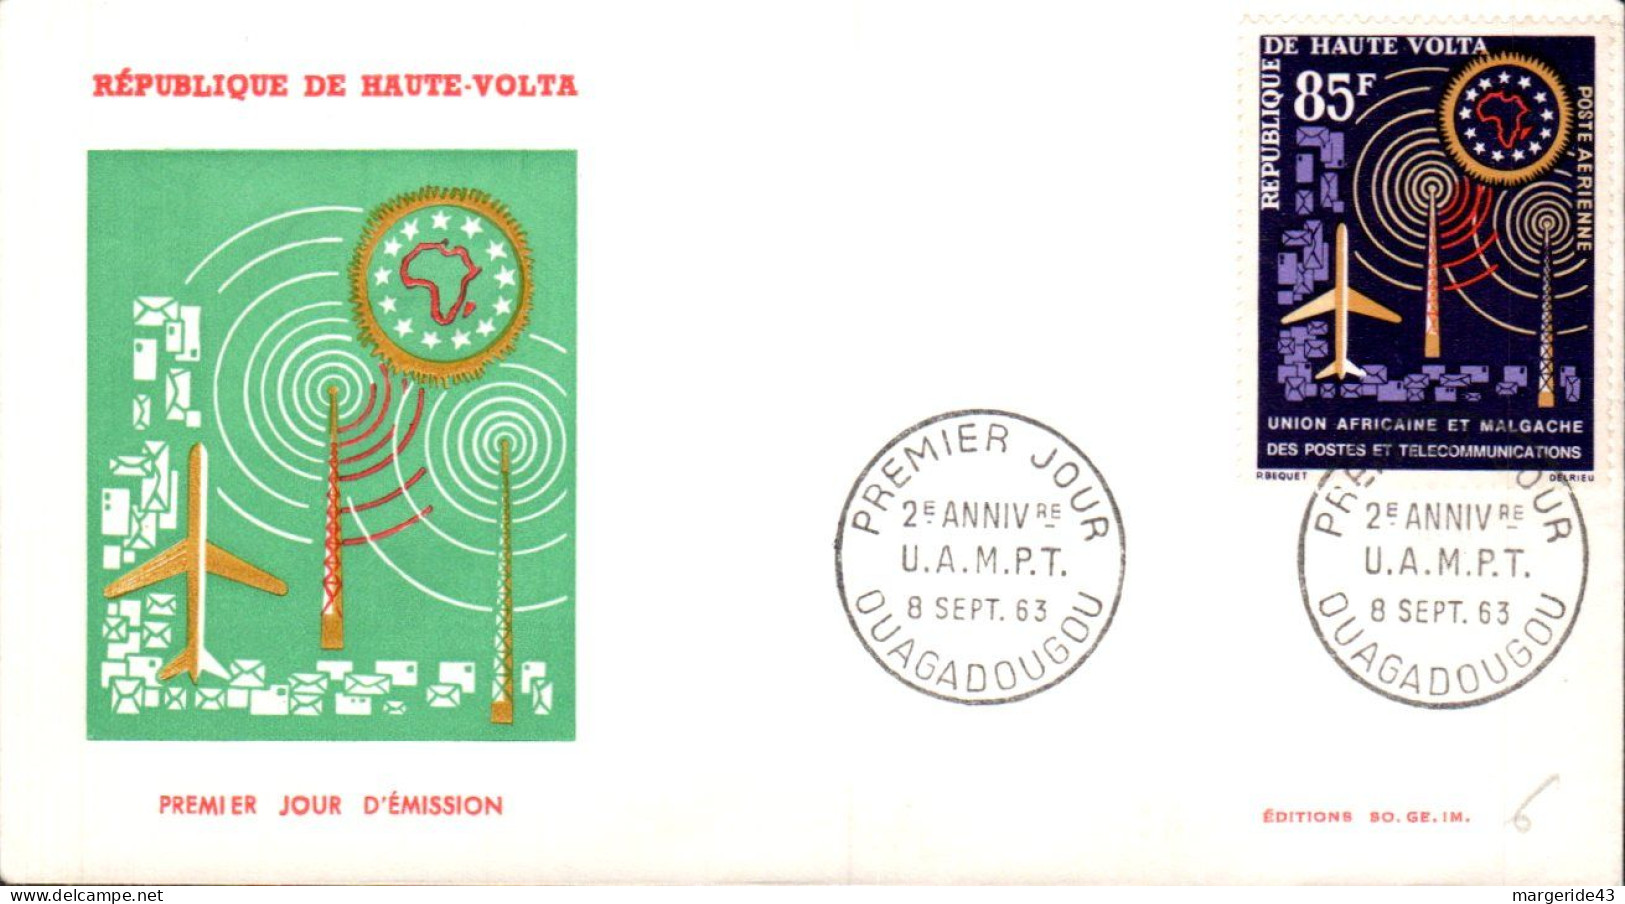 HAUTE VOLTA FDC 1963 2 ANS U A M P T - Upper Volta (1958-1984)